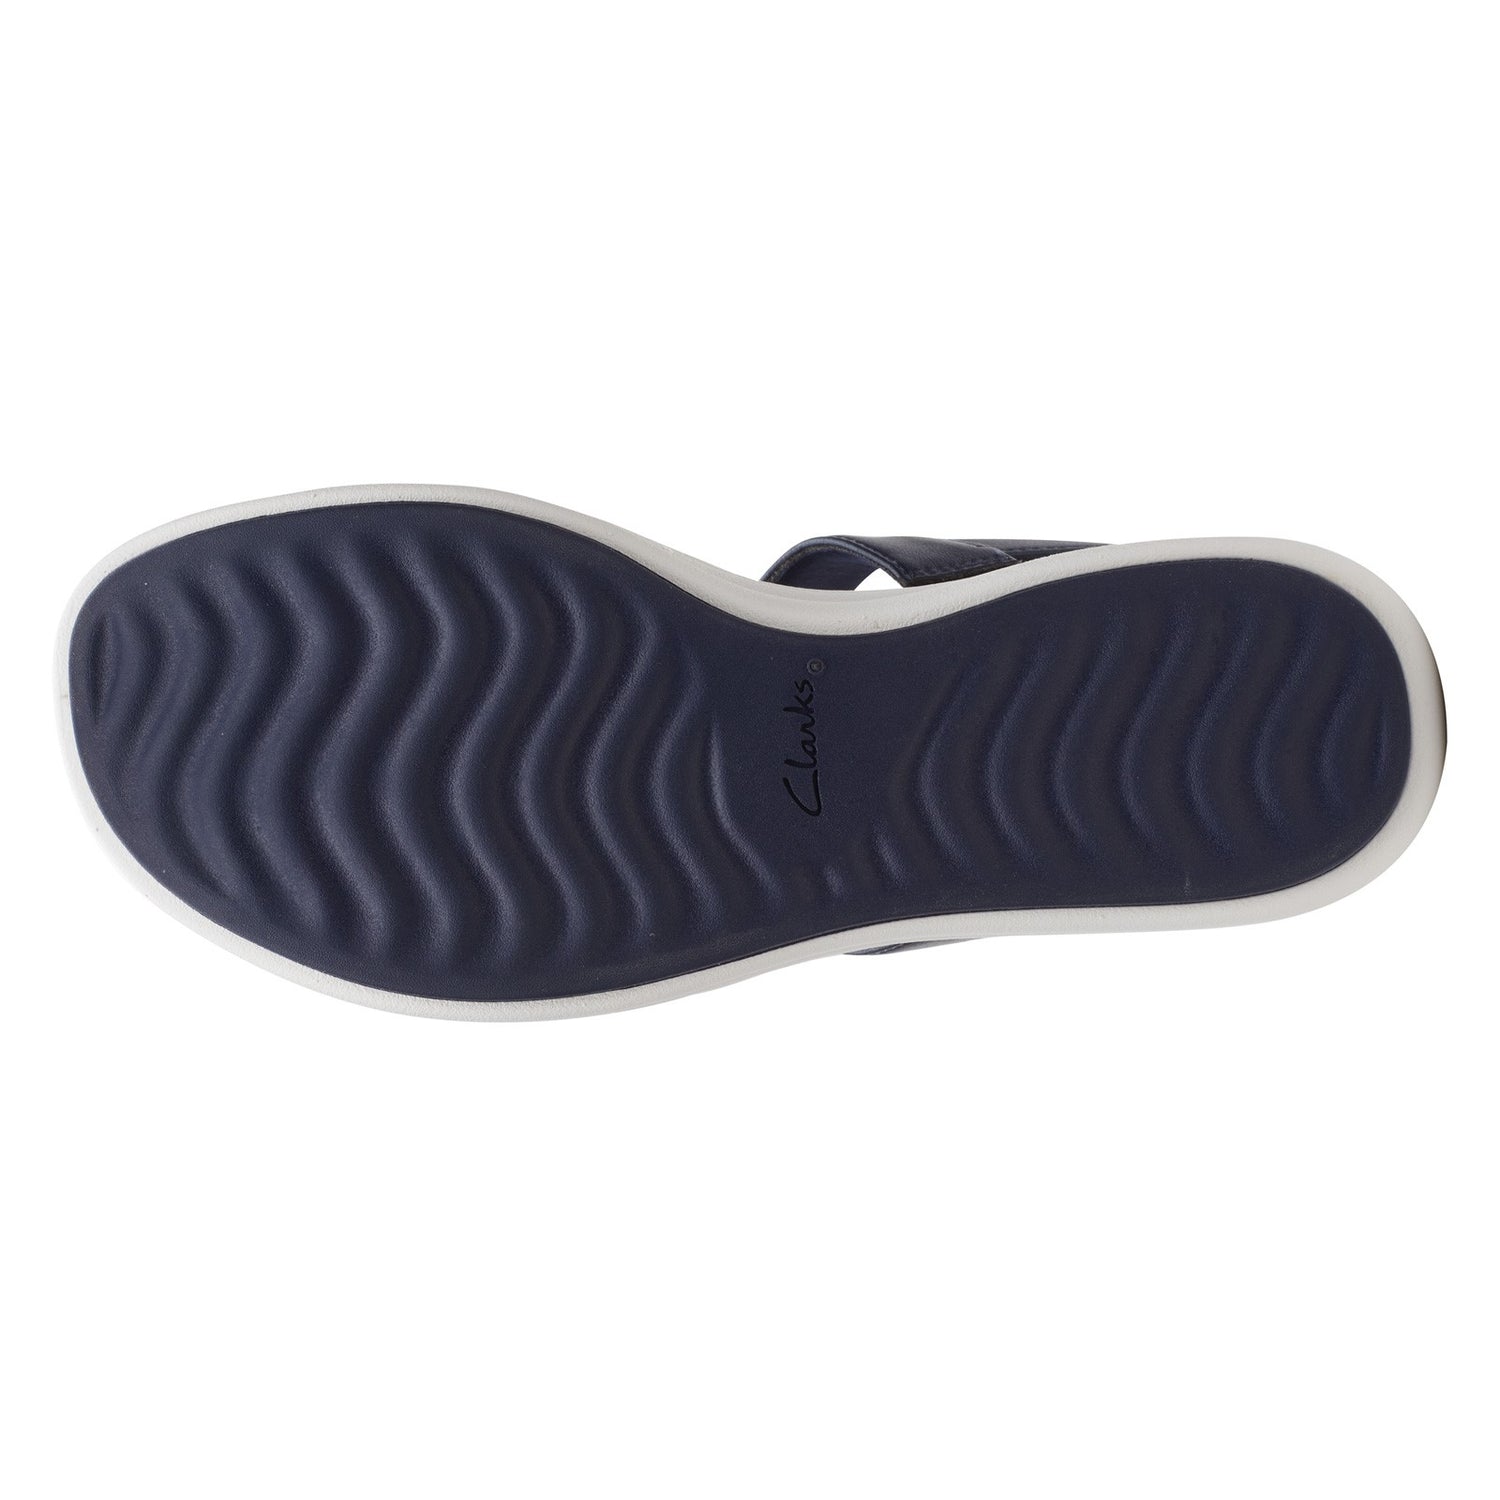 Peltz Shoes  Women's Clarks Drift Ease Sandal NAVY 26164969